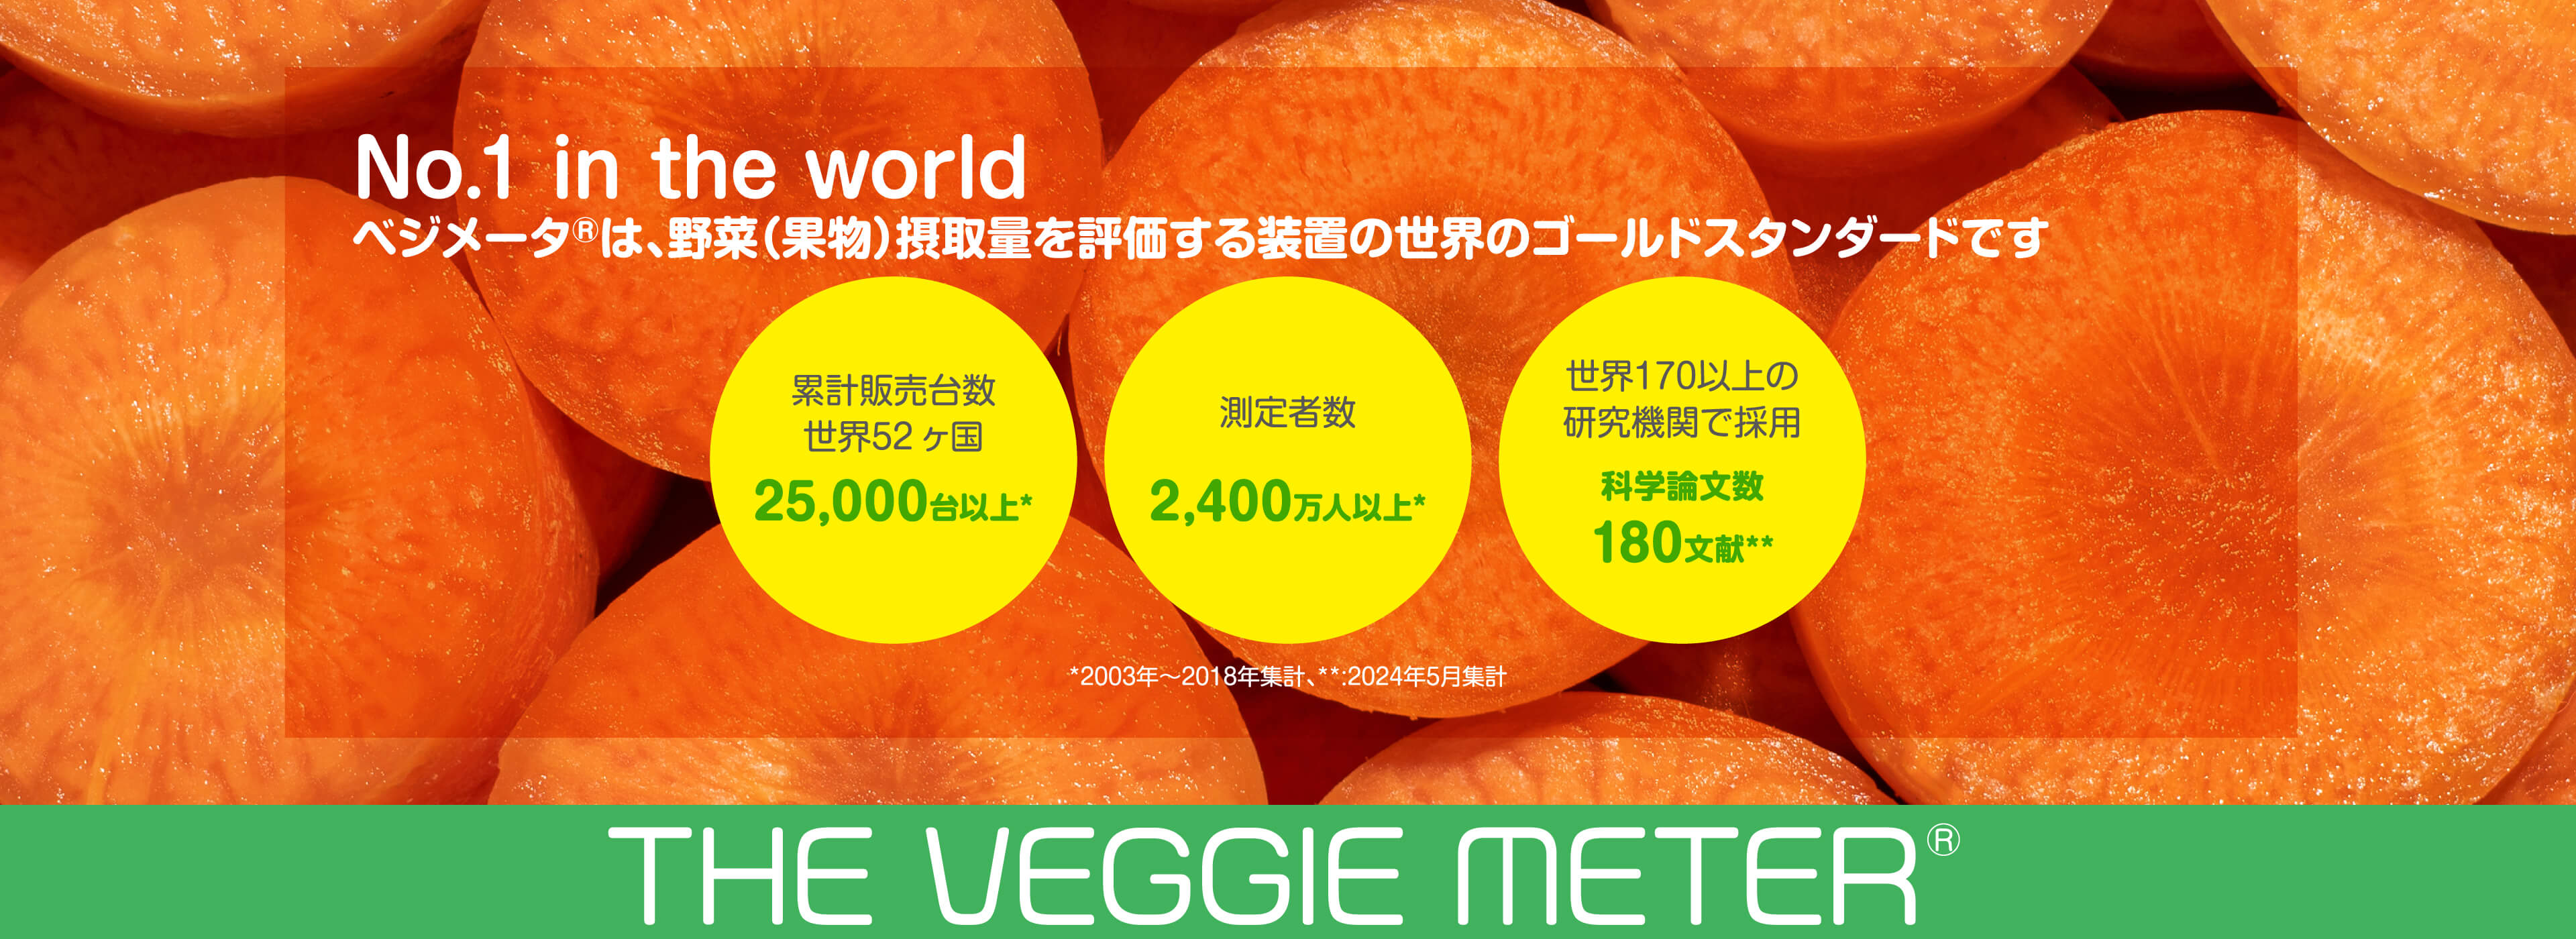 No.1 in the world ベジメータⓇは、野菜（果物）摂取量を評価する装置の世界のゴールドスタンダードです。